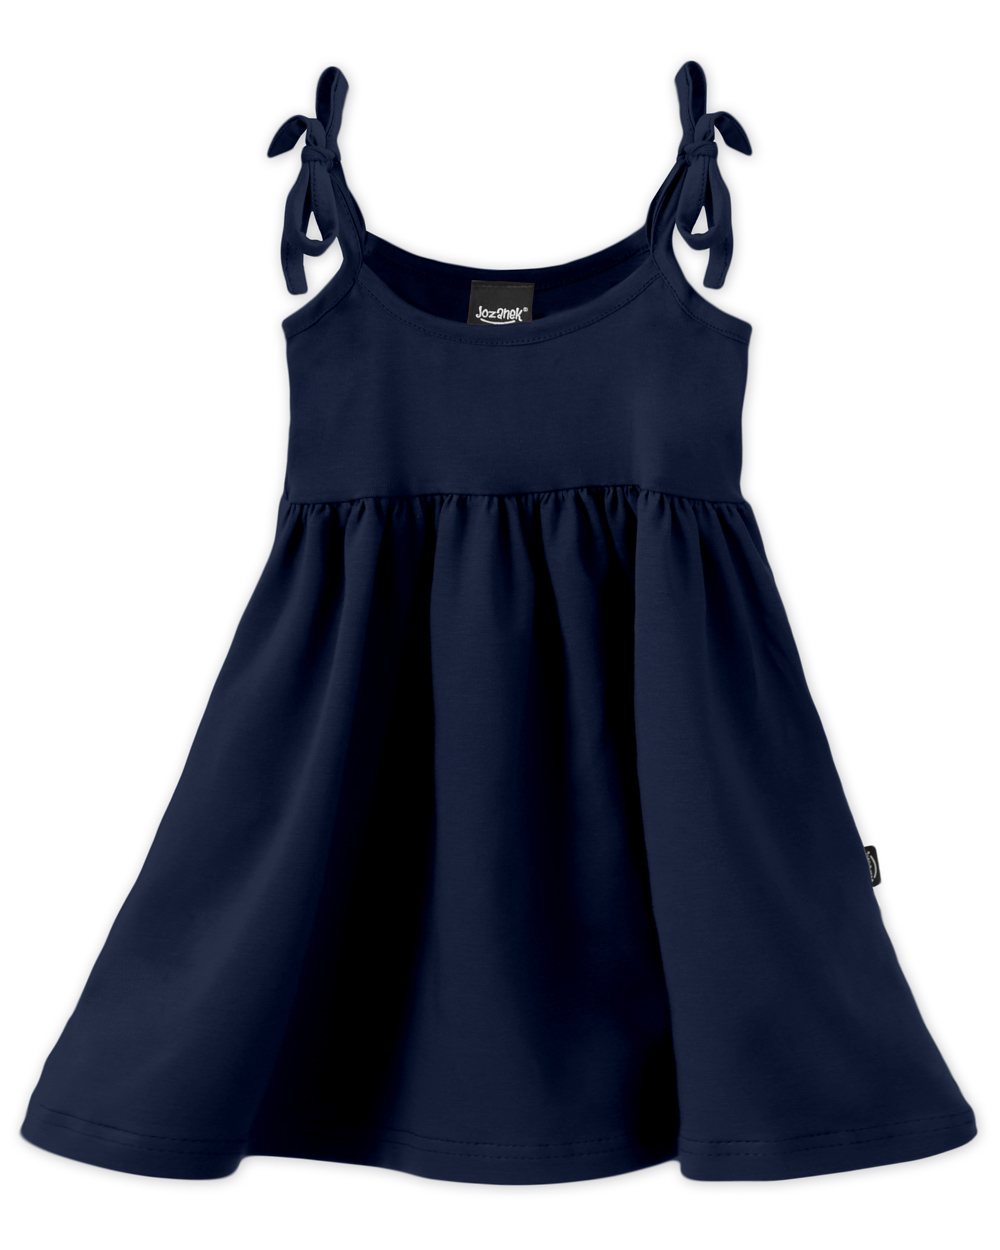 Dětské šaty s kapsami, vázání na ramenou, tmavě modré